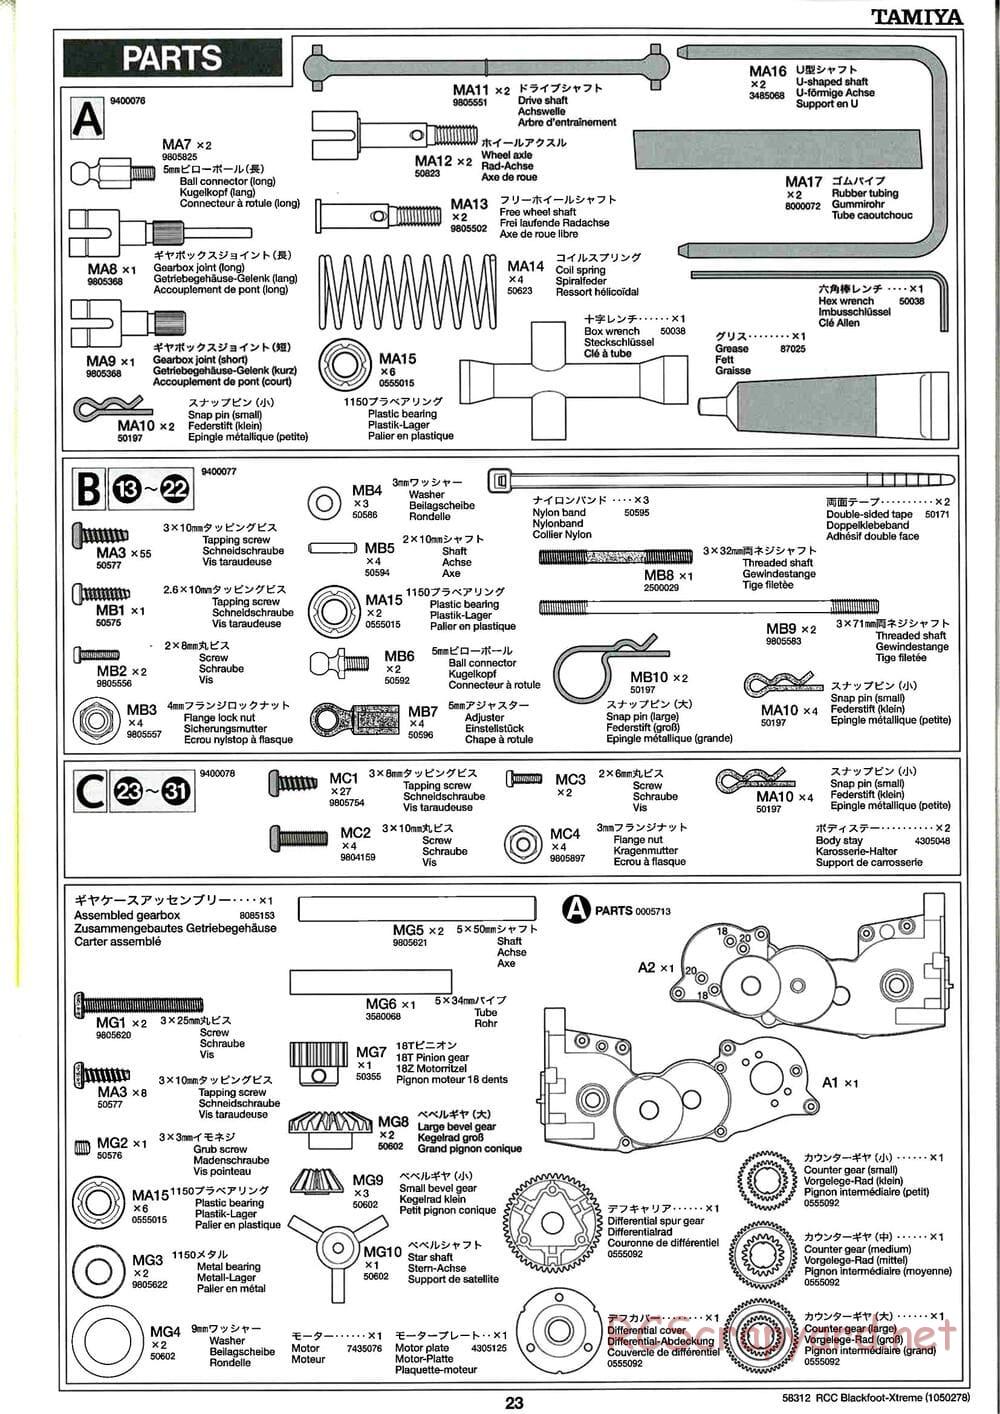 Tamiya - Blackfoot Xtreme - WT-01 Chassis - Manual - Page 23